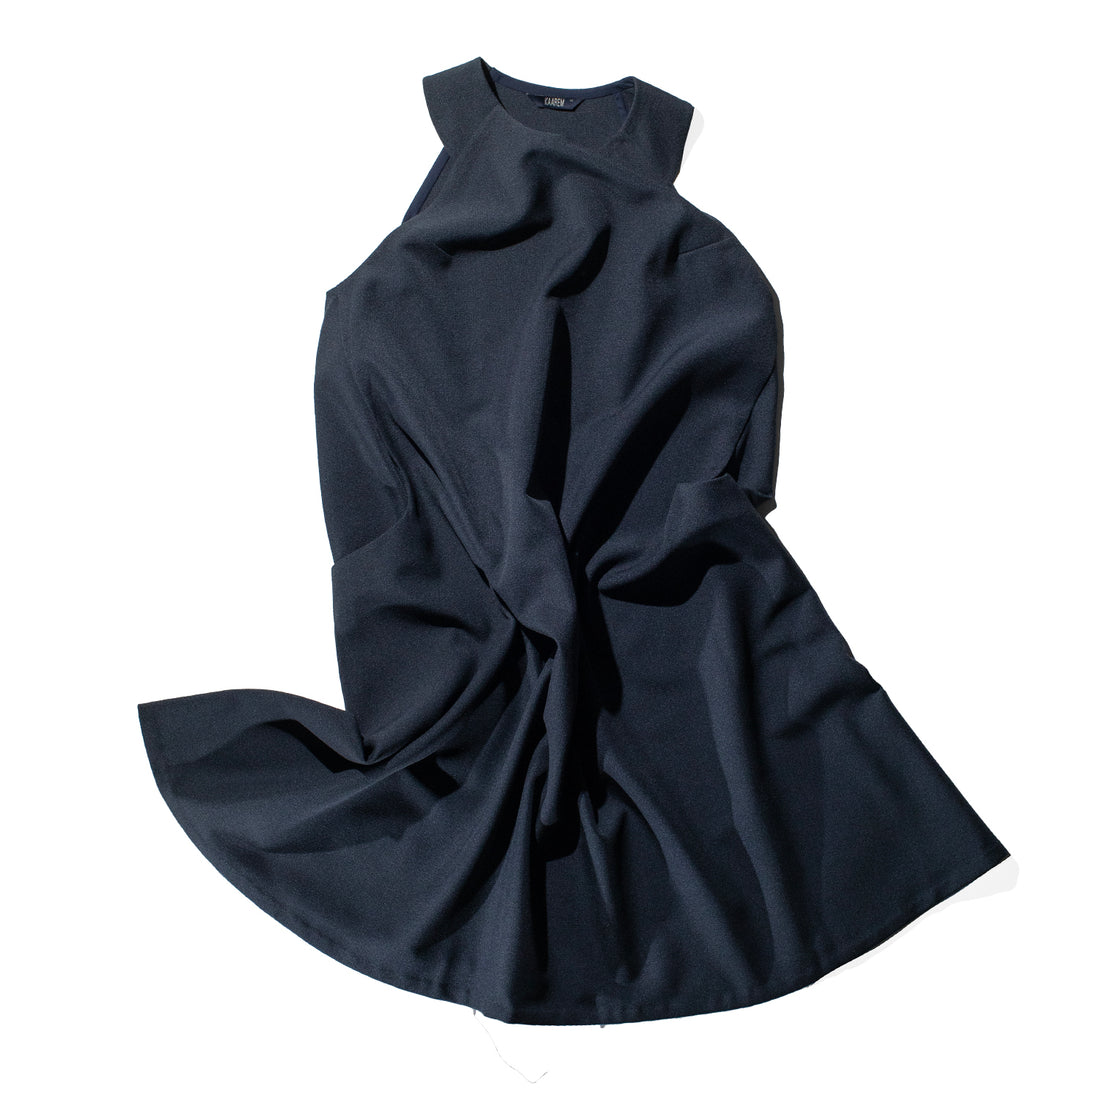 Kaarem Mai A-Line Sleeveless Dress in Dark Blue